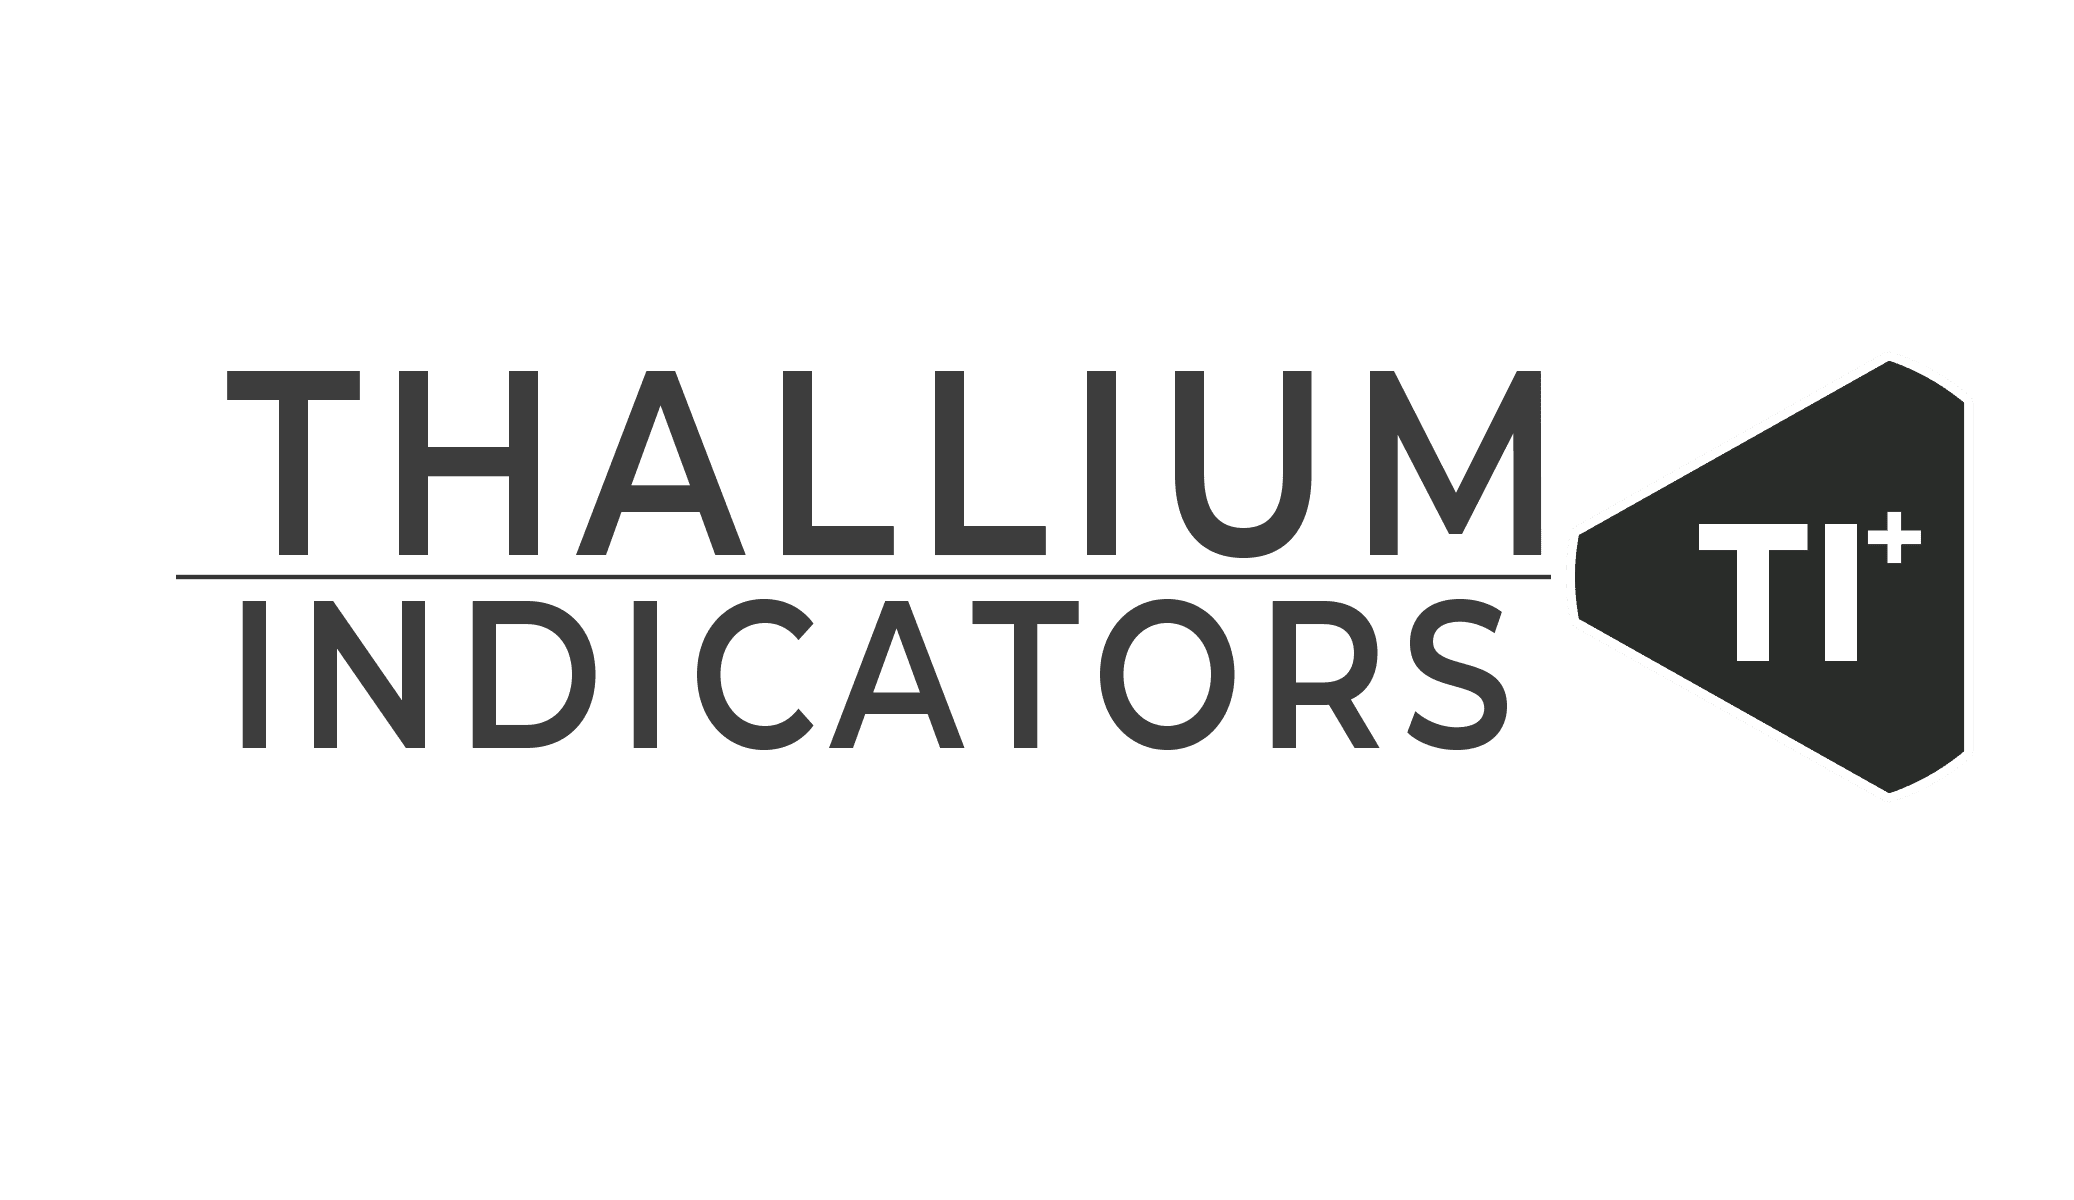 Thallium indicators sticker